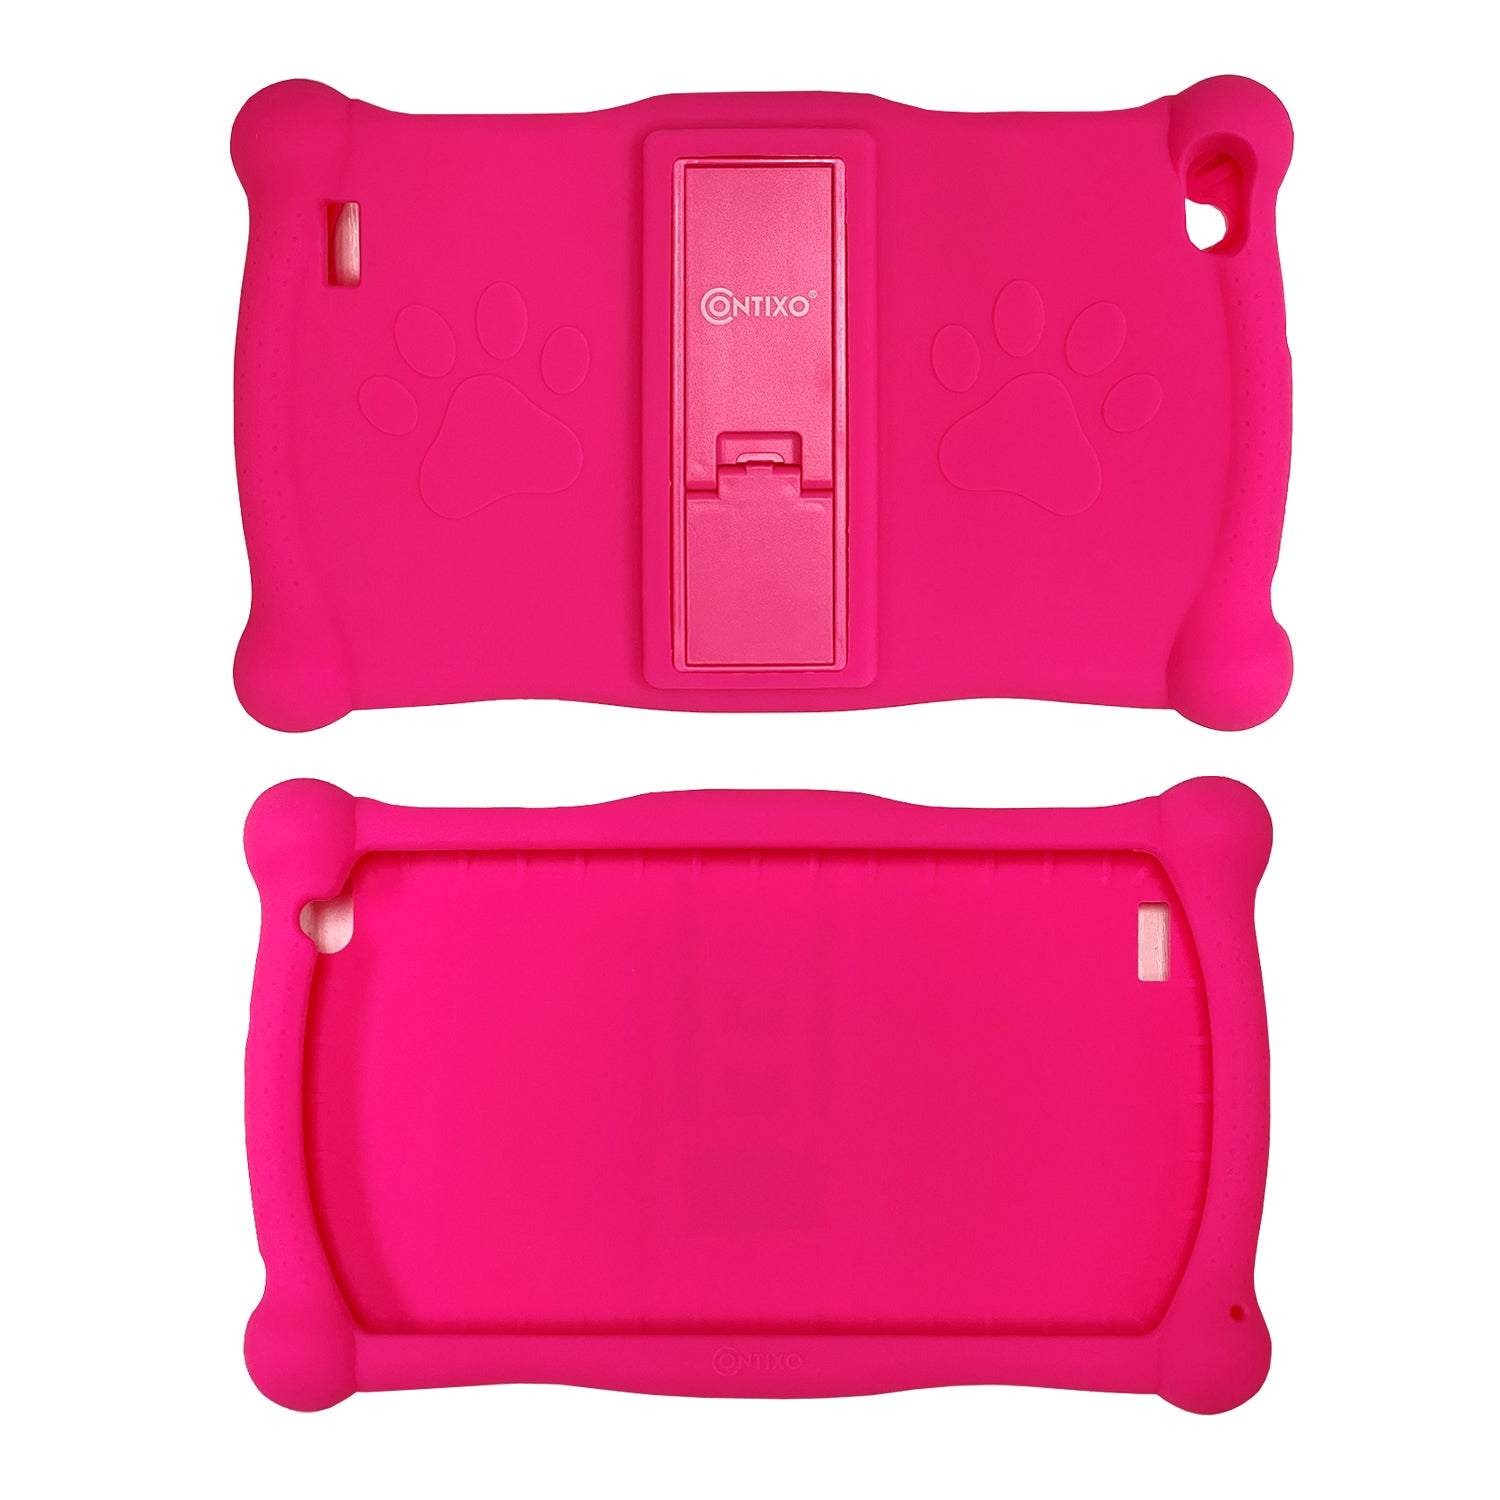 Contixo V10 Kids Tablet -Protective Silicon Case, Multi-Color